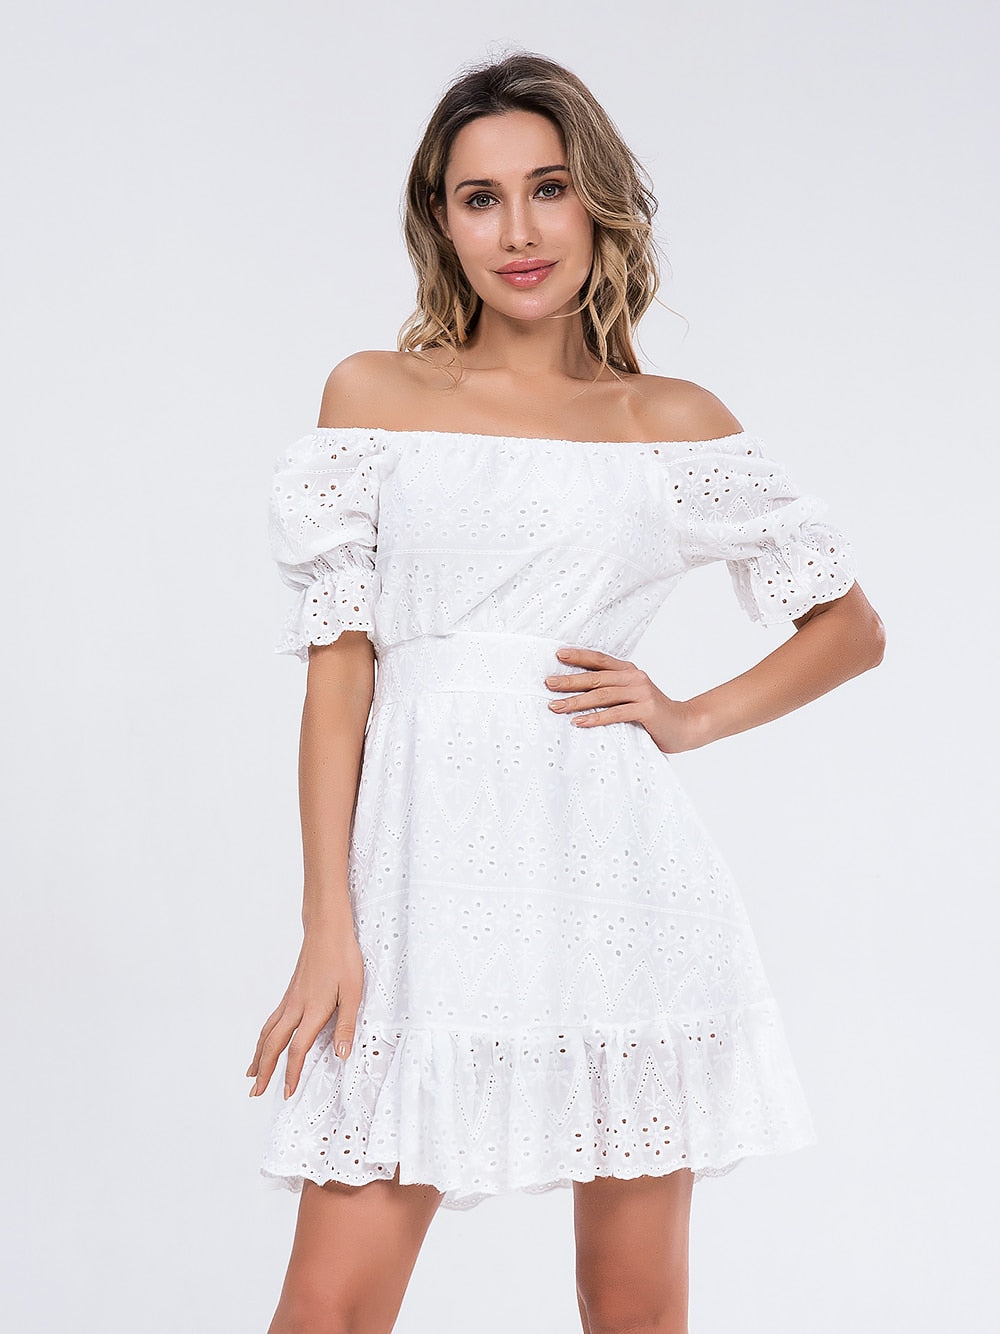 Women summer white dress Holiday casual high waist A-line Dress